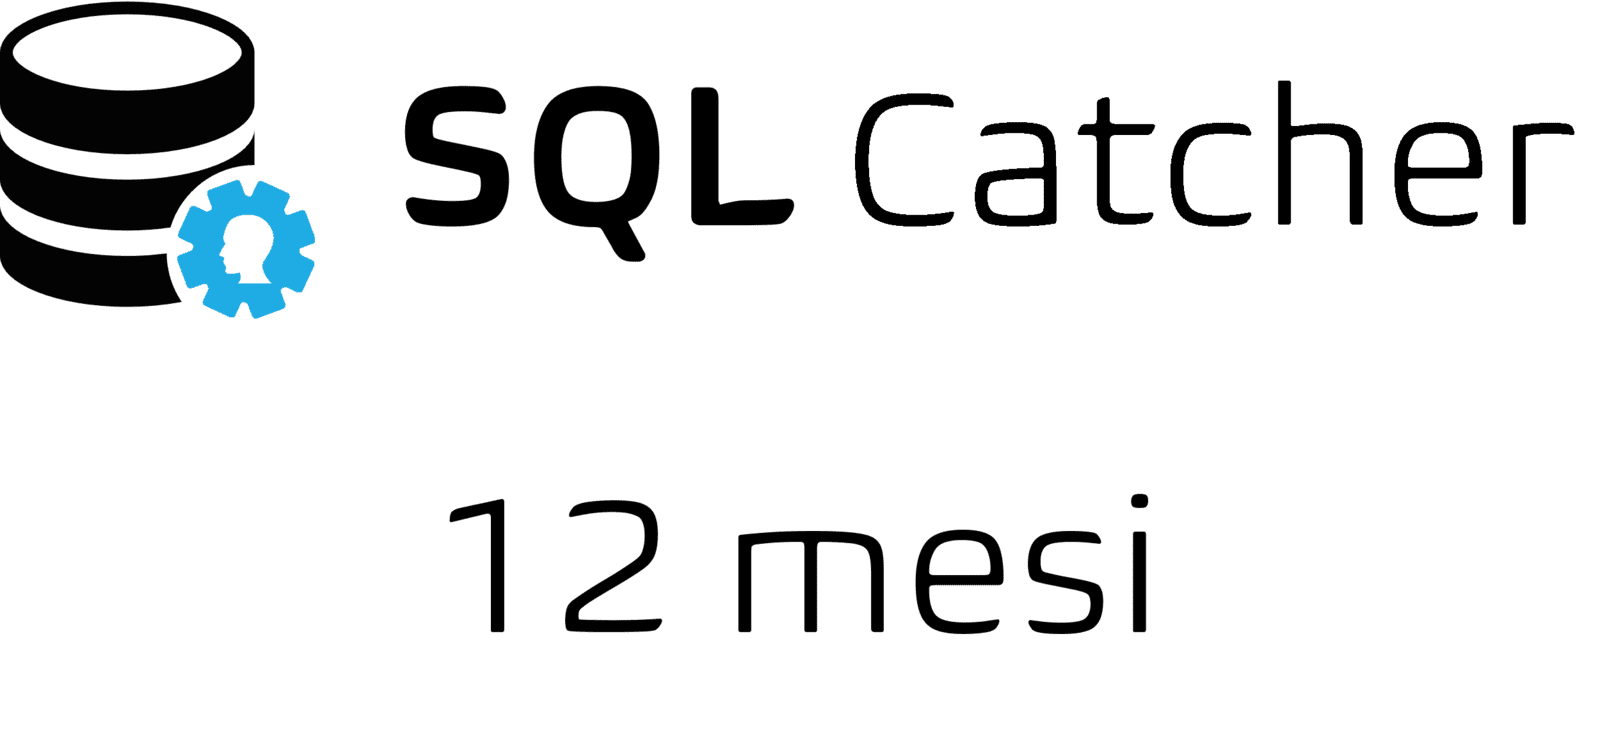 SQL Catcher 12 mesi